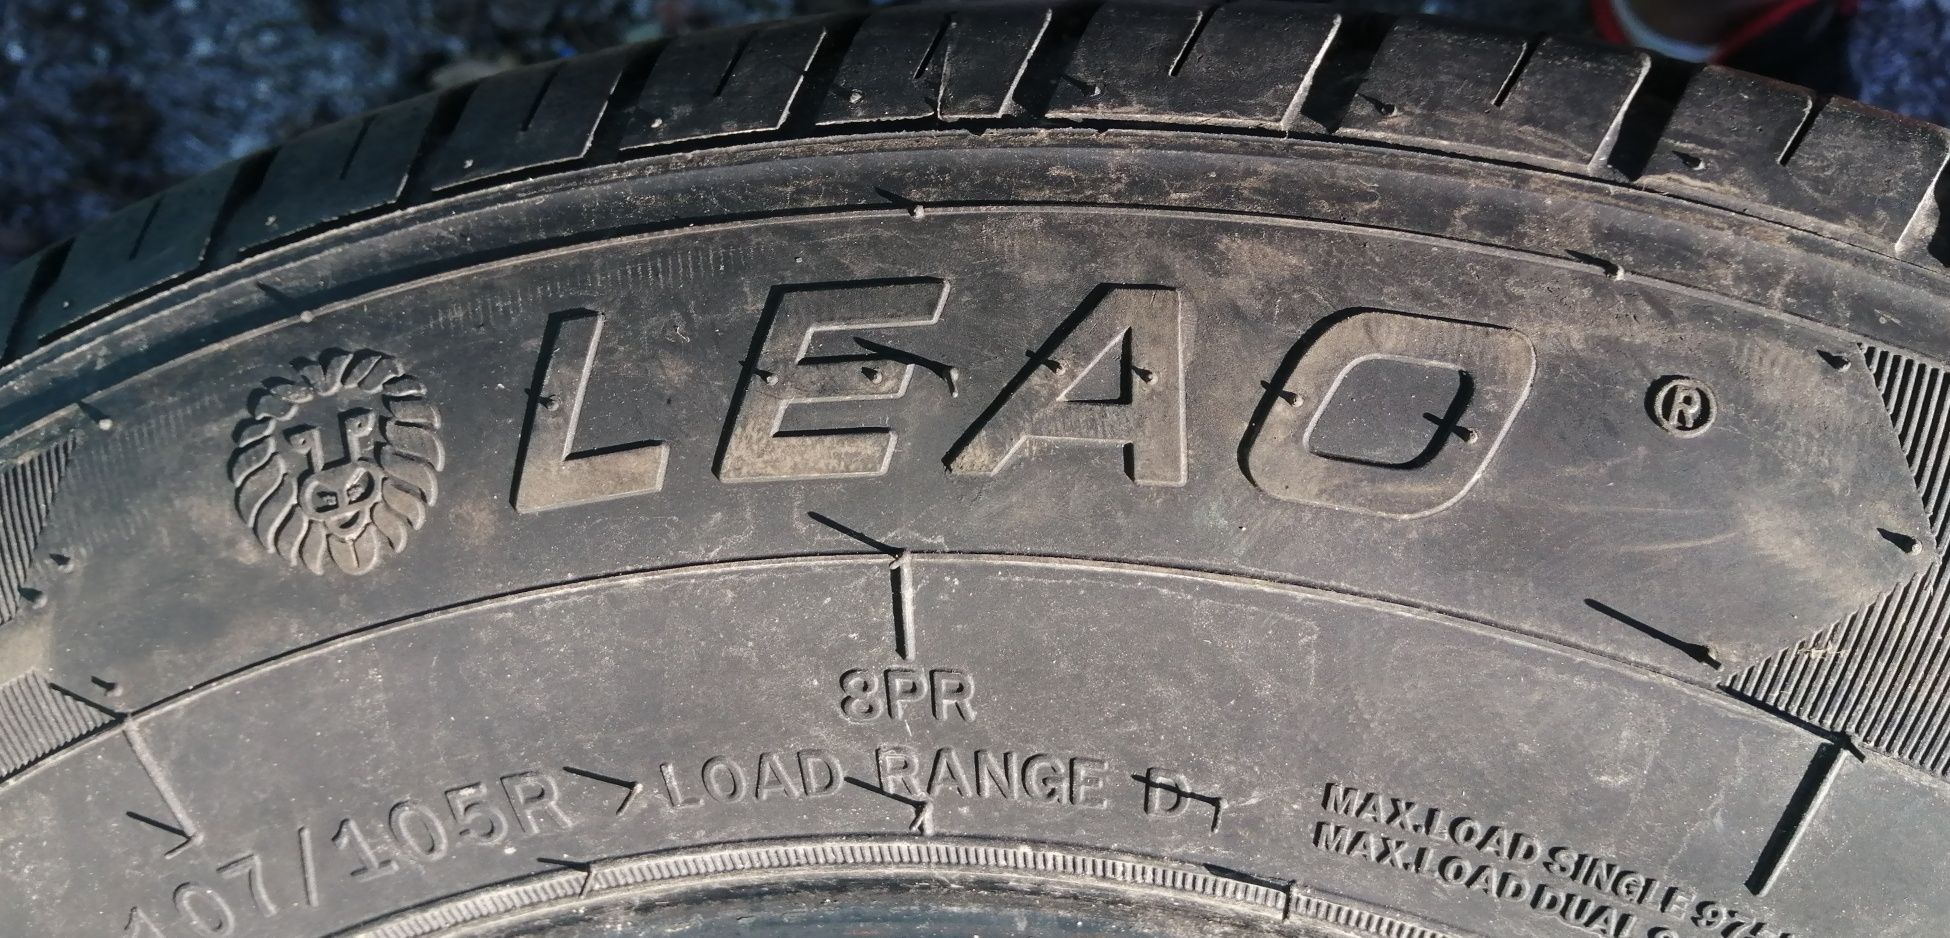 Бусови гуми 195 75 16 С Ц Leao tire за бус. 
4 броя. 
Нов внос. Не са